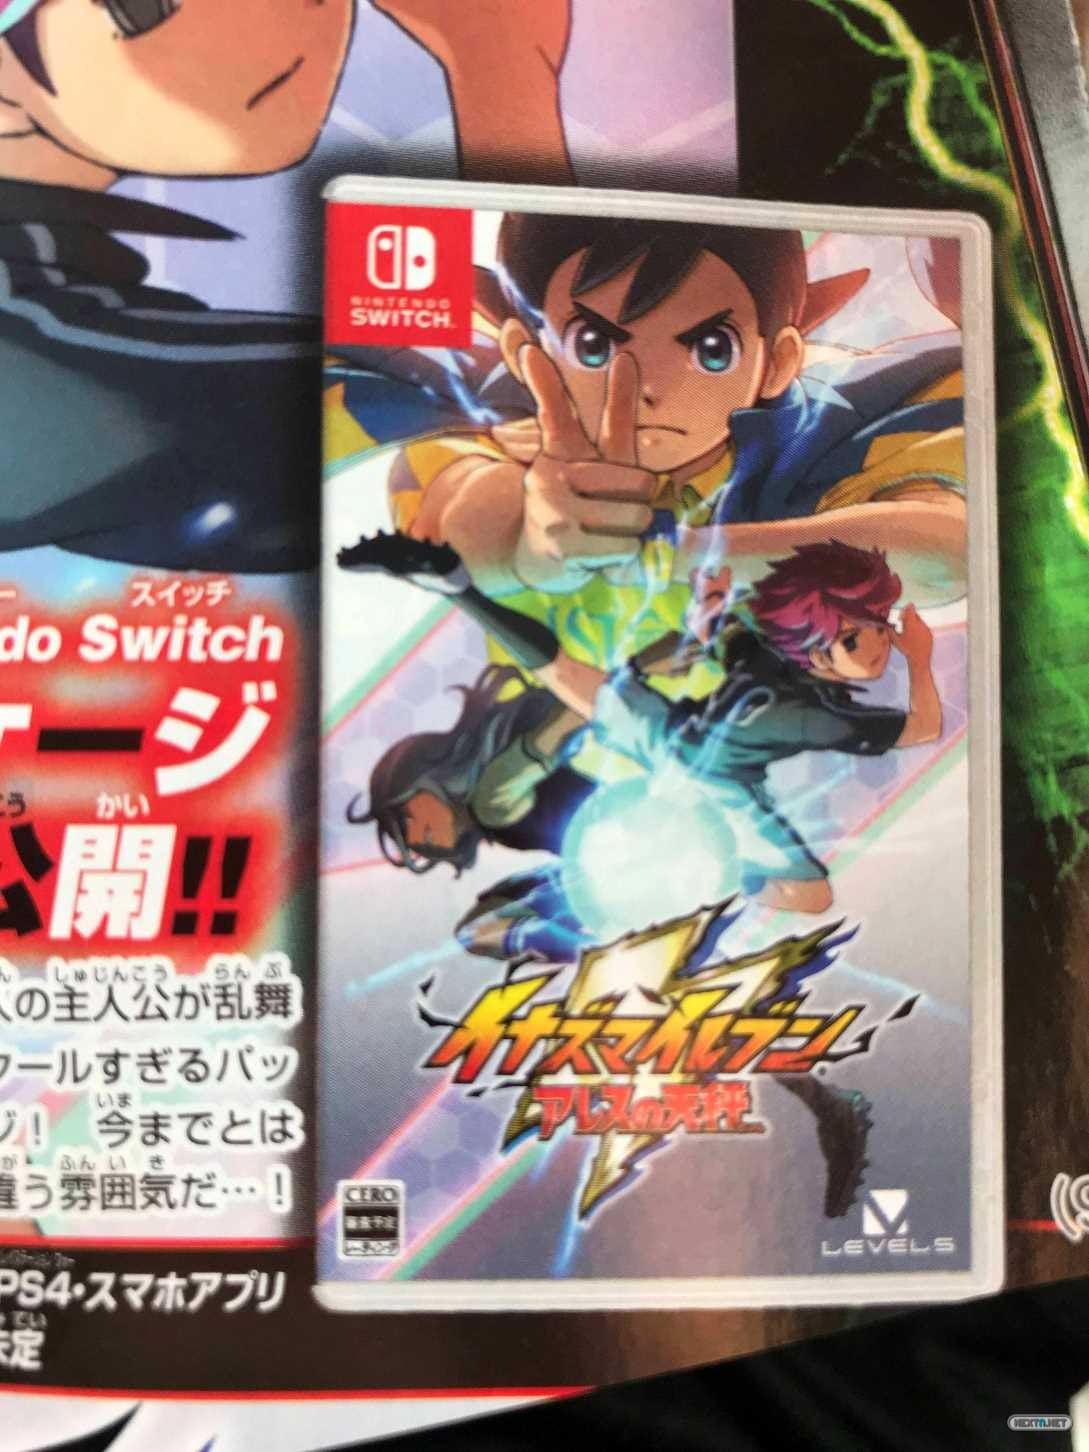 Ocupar Excavación Represalias Inazuma Eleven Ares revela su boxart japonesa para Nintendo Switch